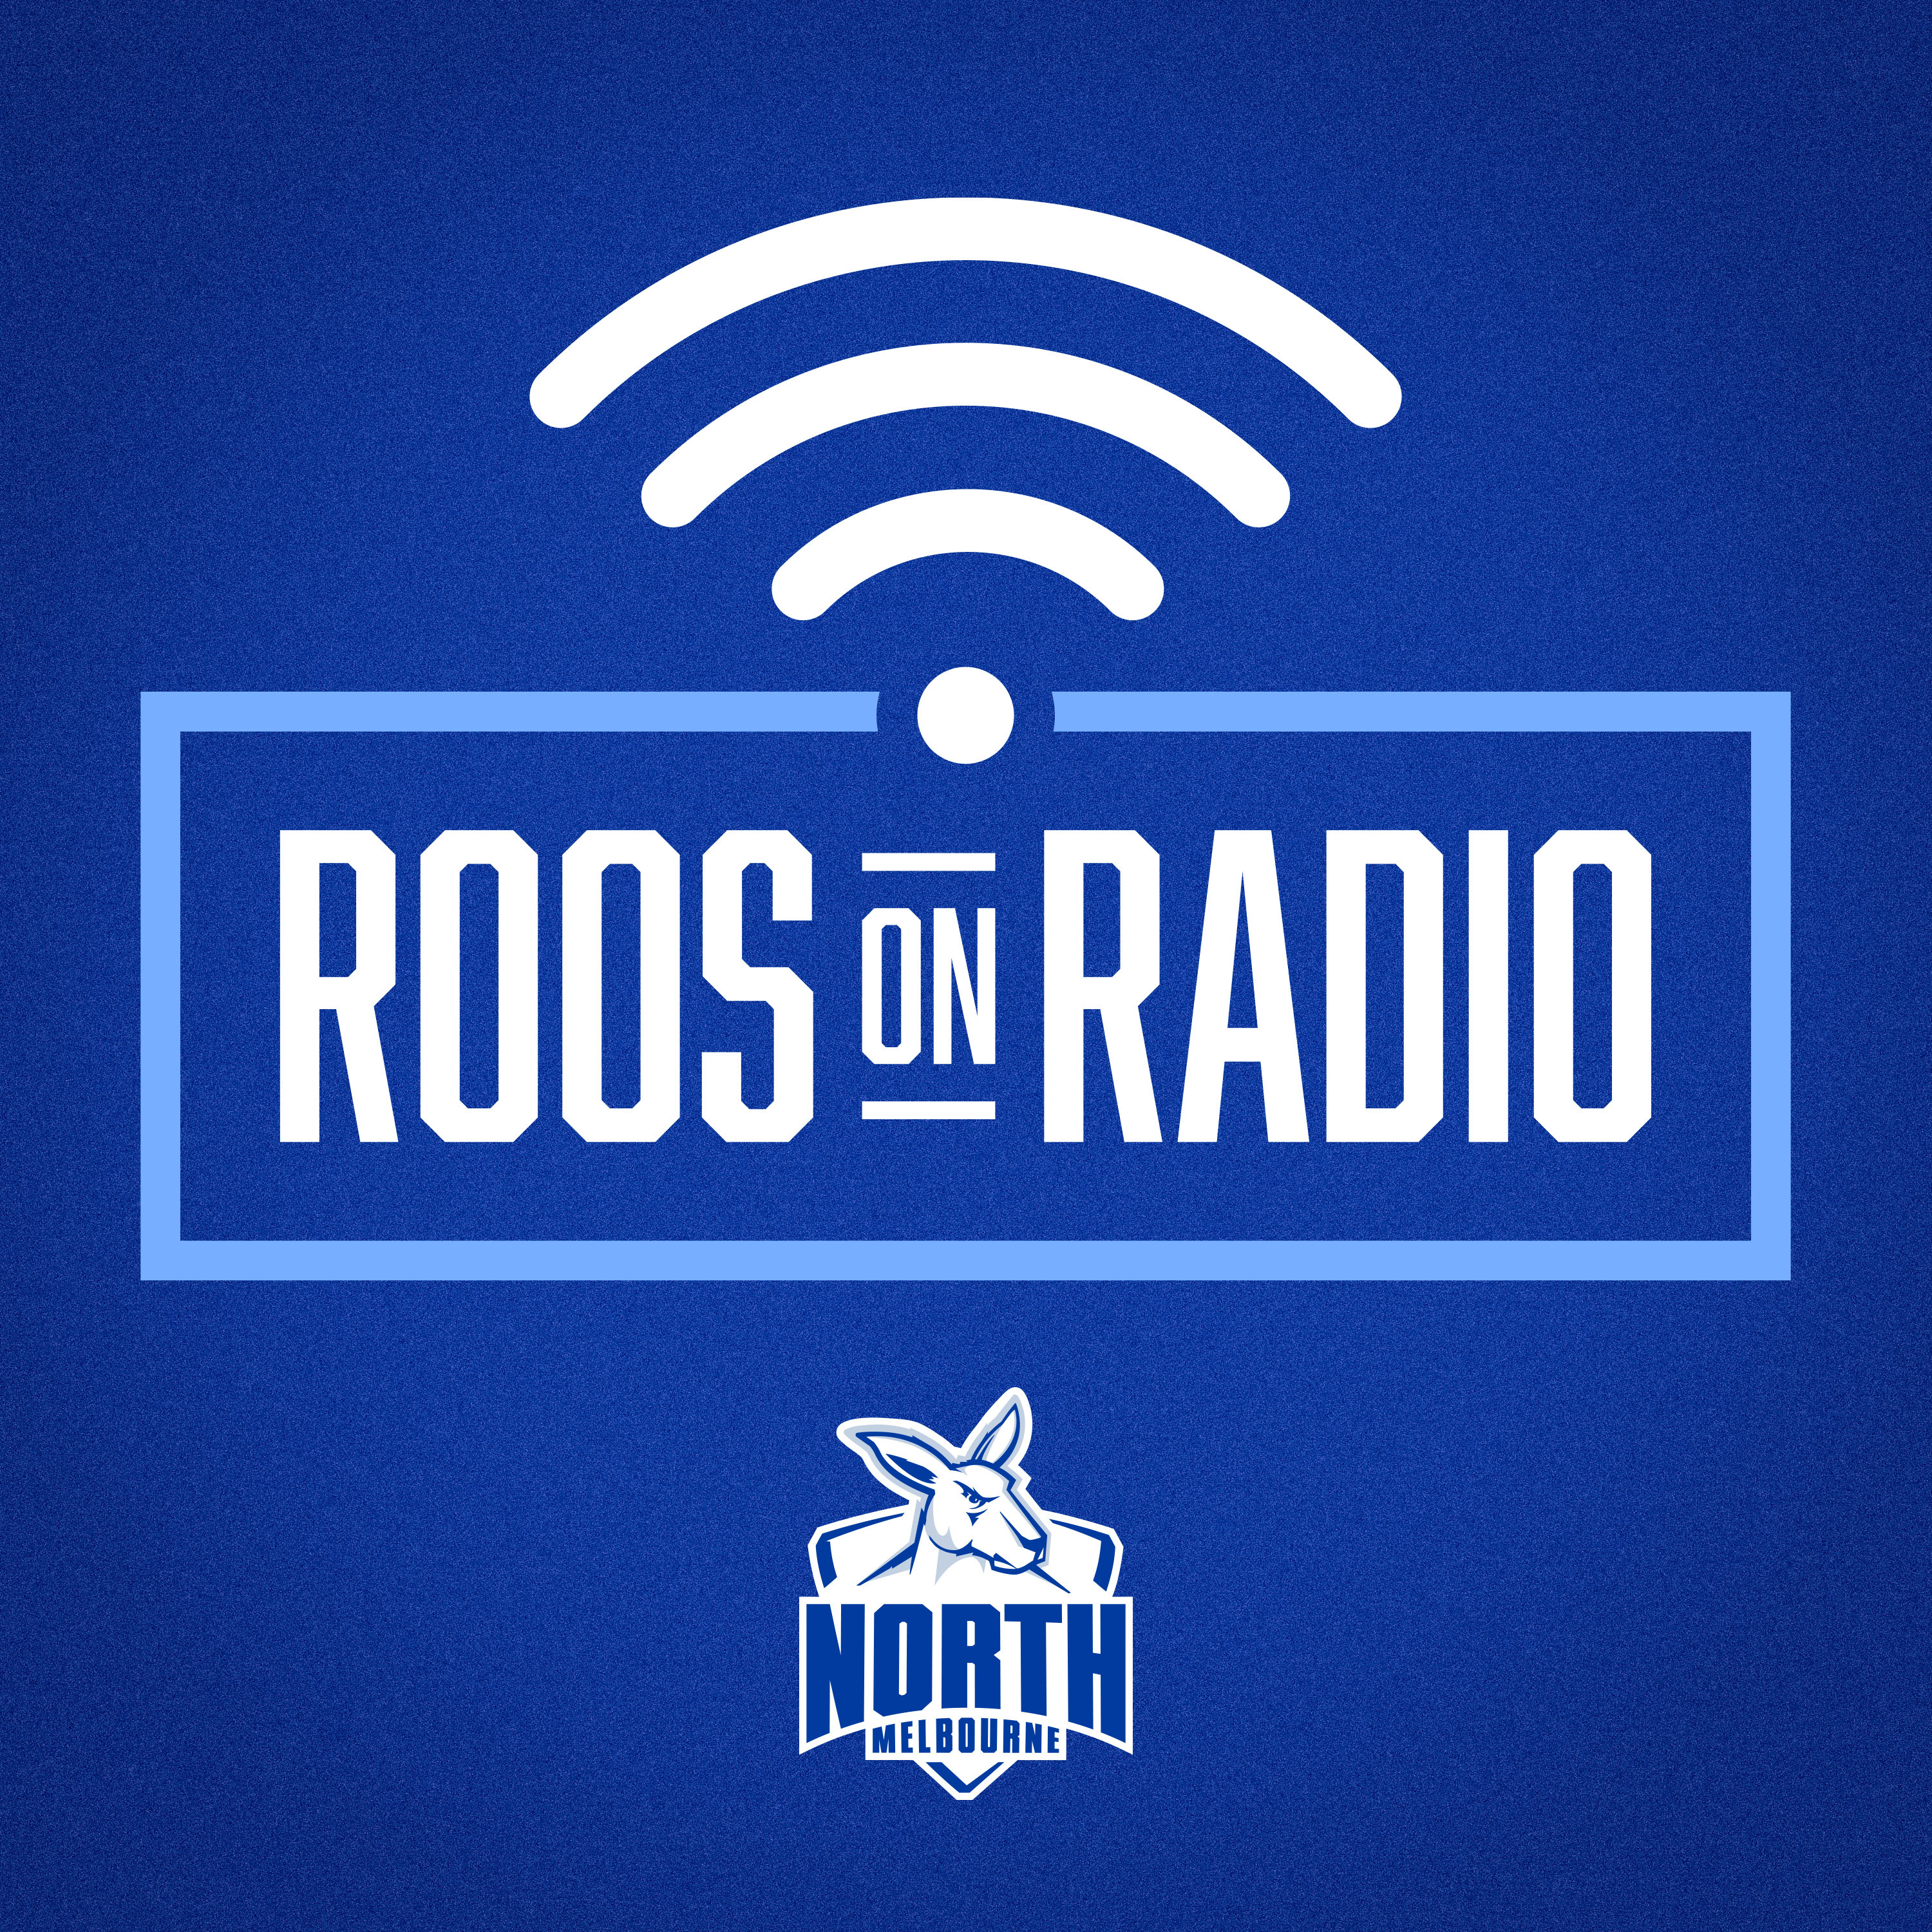 Roos on Radio